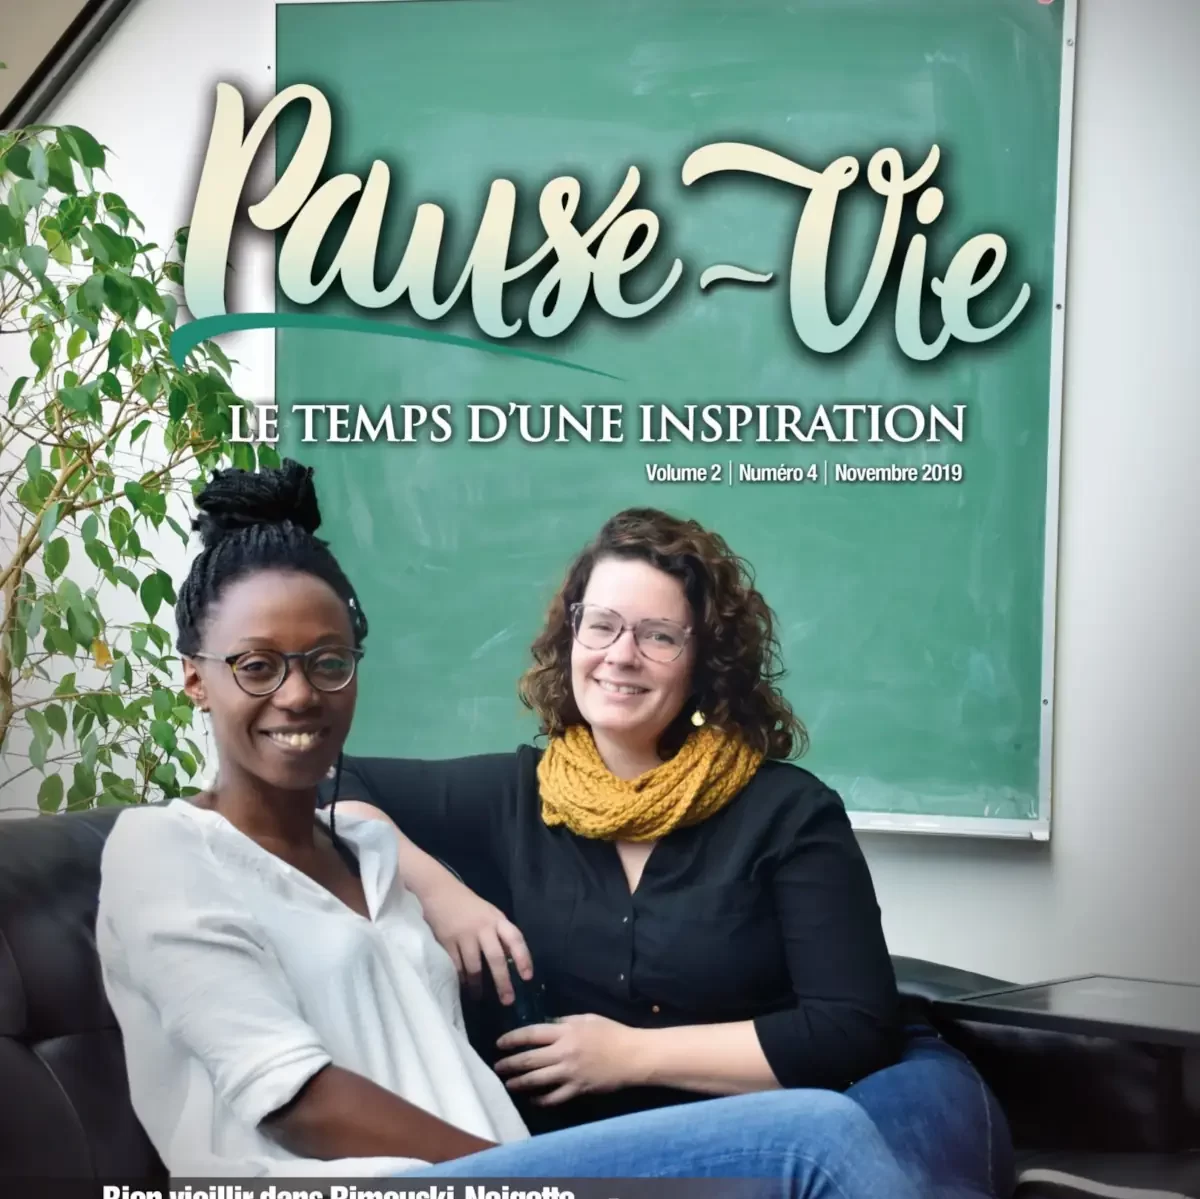 Couverture du magazine Pause-Vie (novembre 2019).